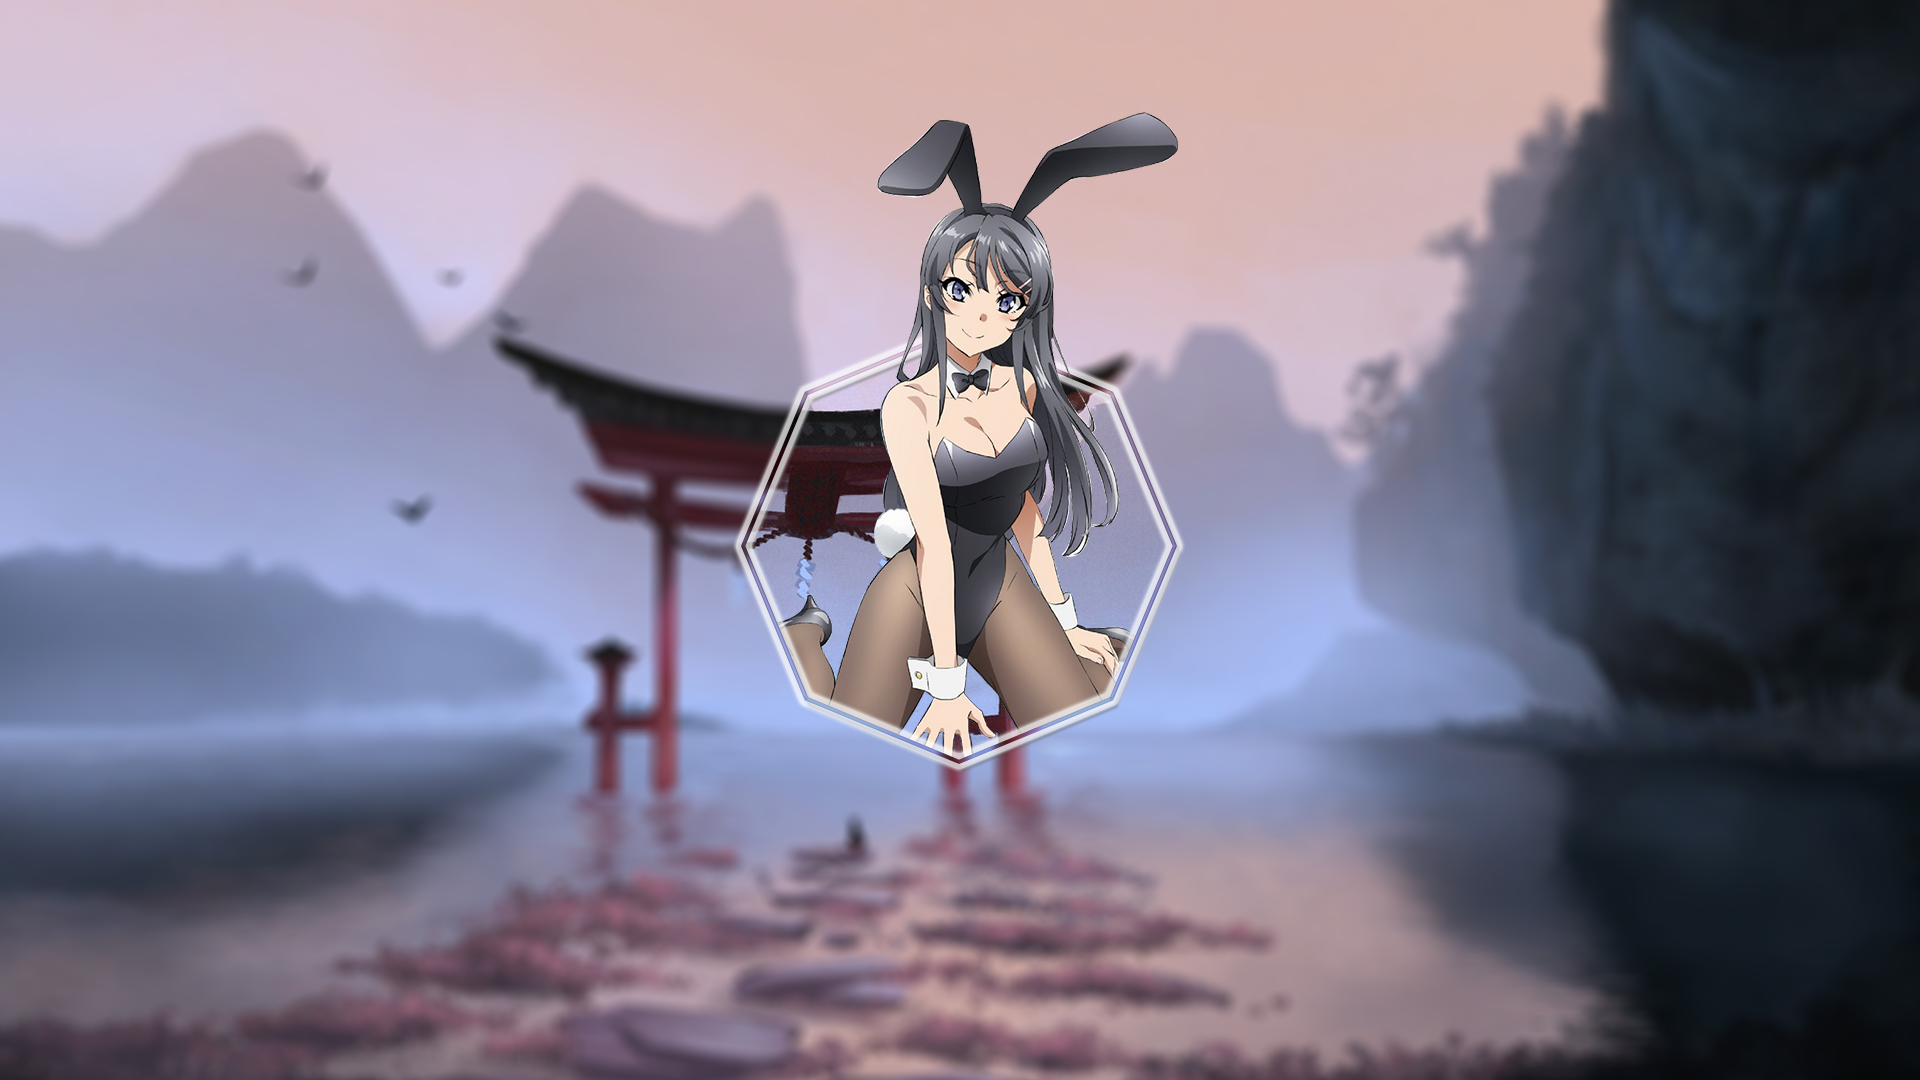 Anime 1920x1080 Sakurajima Mai Seishun Buta Yarō wa Bunny Girl-senpai no Yume wo Minai bunny girl bunny ears anime picture-in-picture anime girls bunny suit